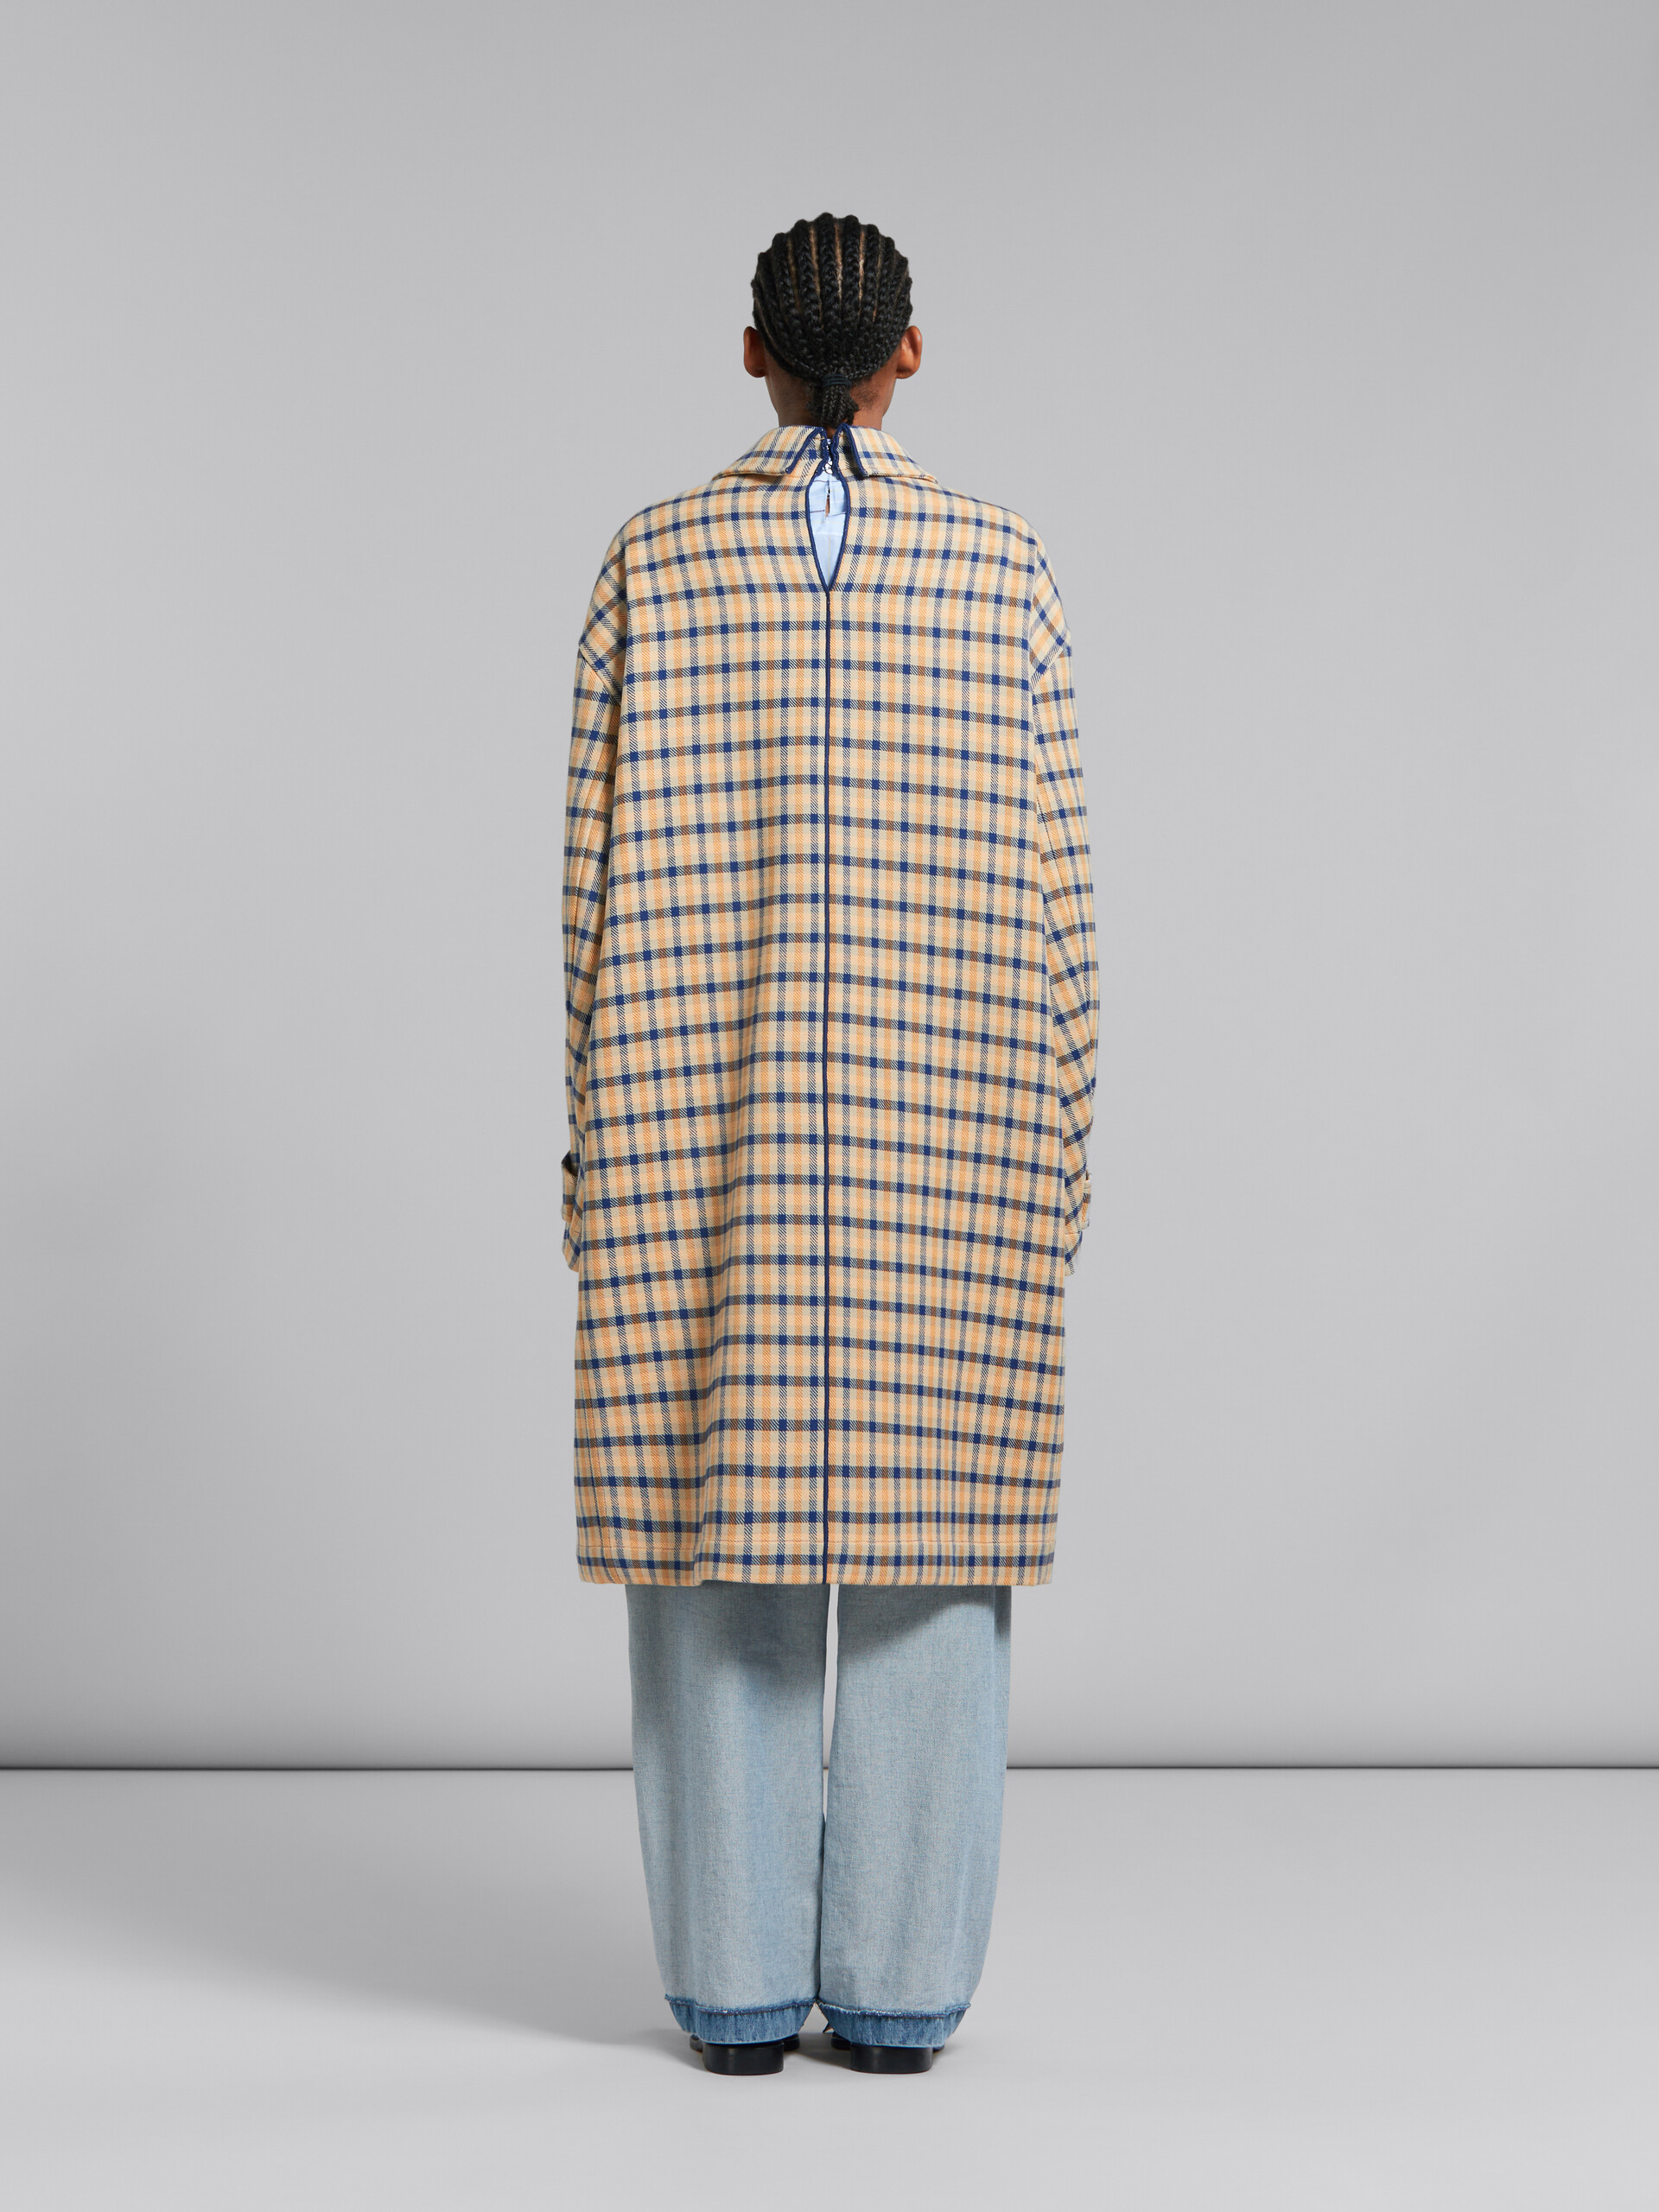 Manteau réversible en laine bleue et jaune à carreaux - Vestes - Image 3